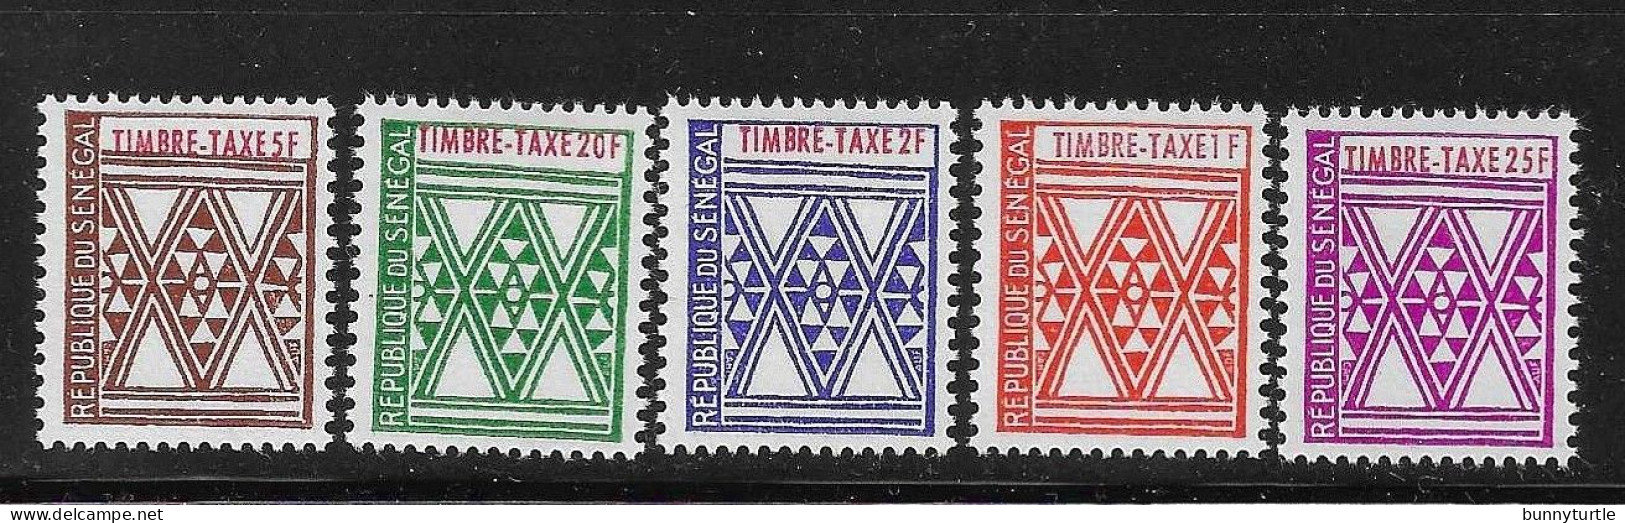 Senegal 1961 Postage Due Stamp MNH - Sénégal (1960-...)